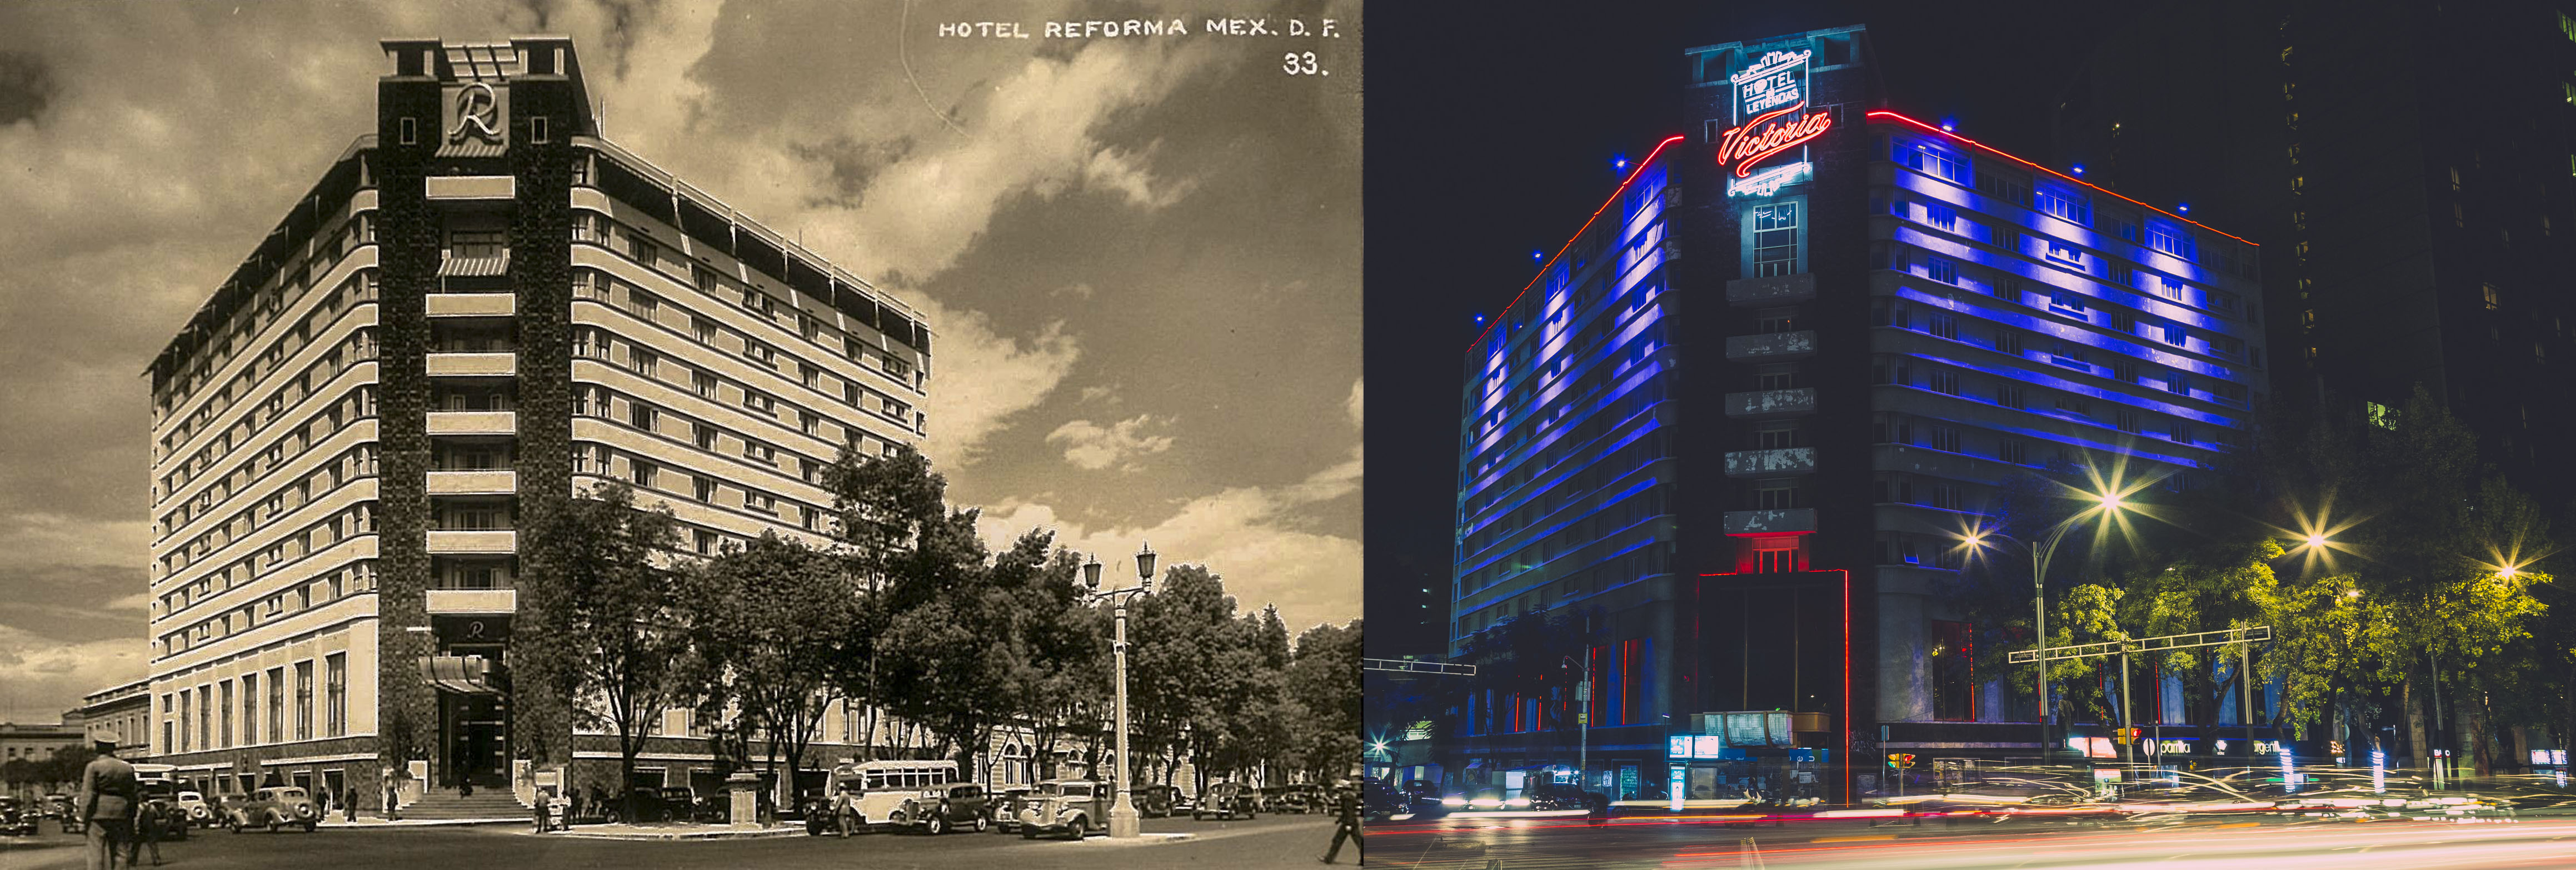 Hotel Reforma/Hotel Victoria: Usos cuestionables del patrimonio arquitectónico del siglo XX